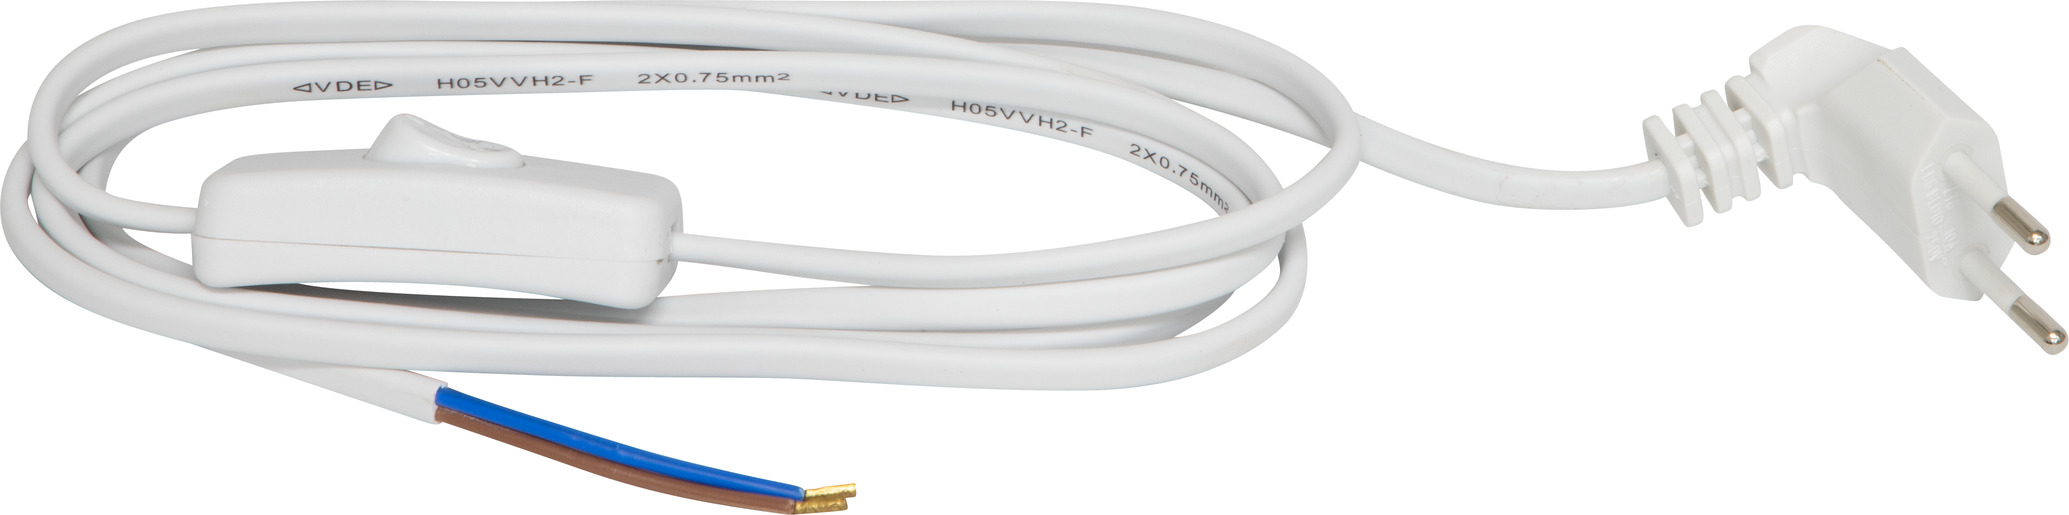 Chargeur et câble d'alimentation PC Brennenstuhl H03VVH2-F 2x0.75